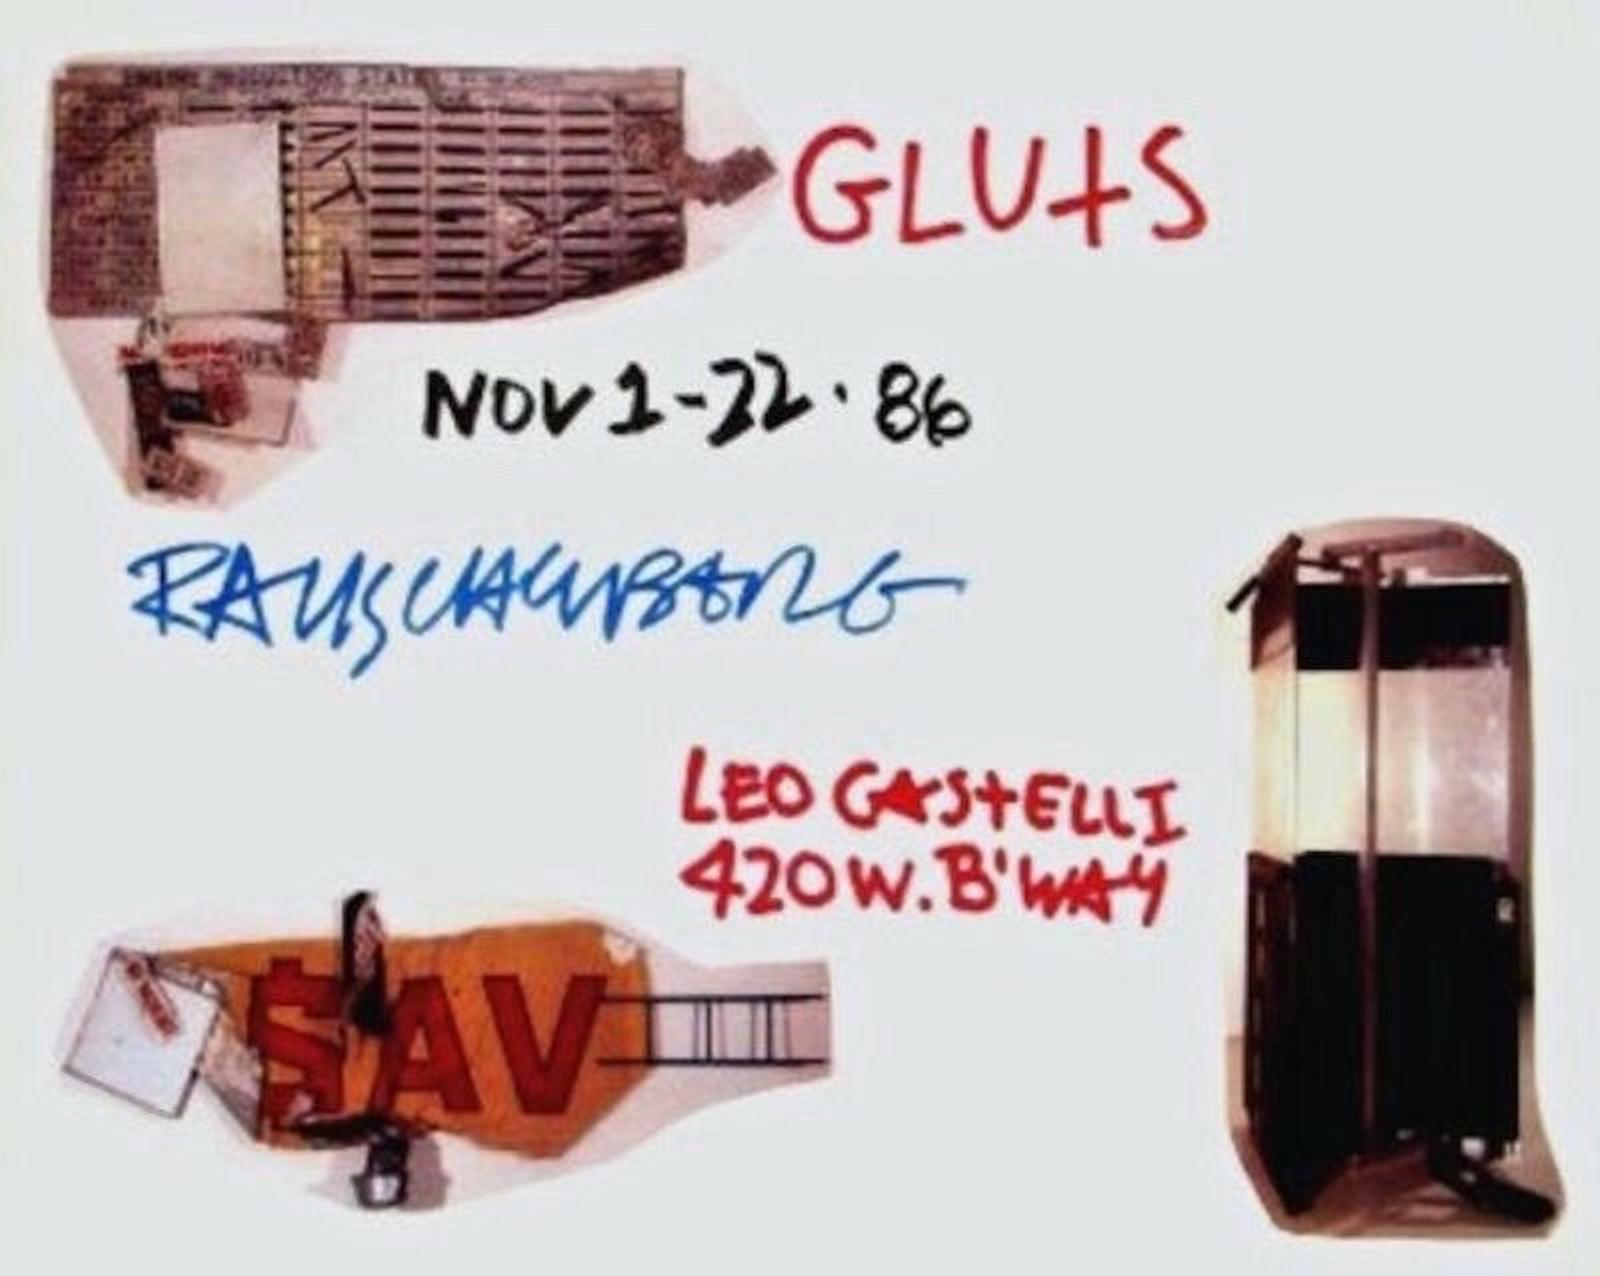 Rauschenberg, Gluts, 1986